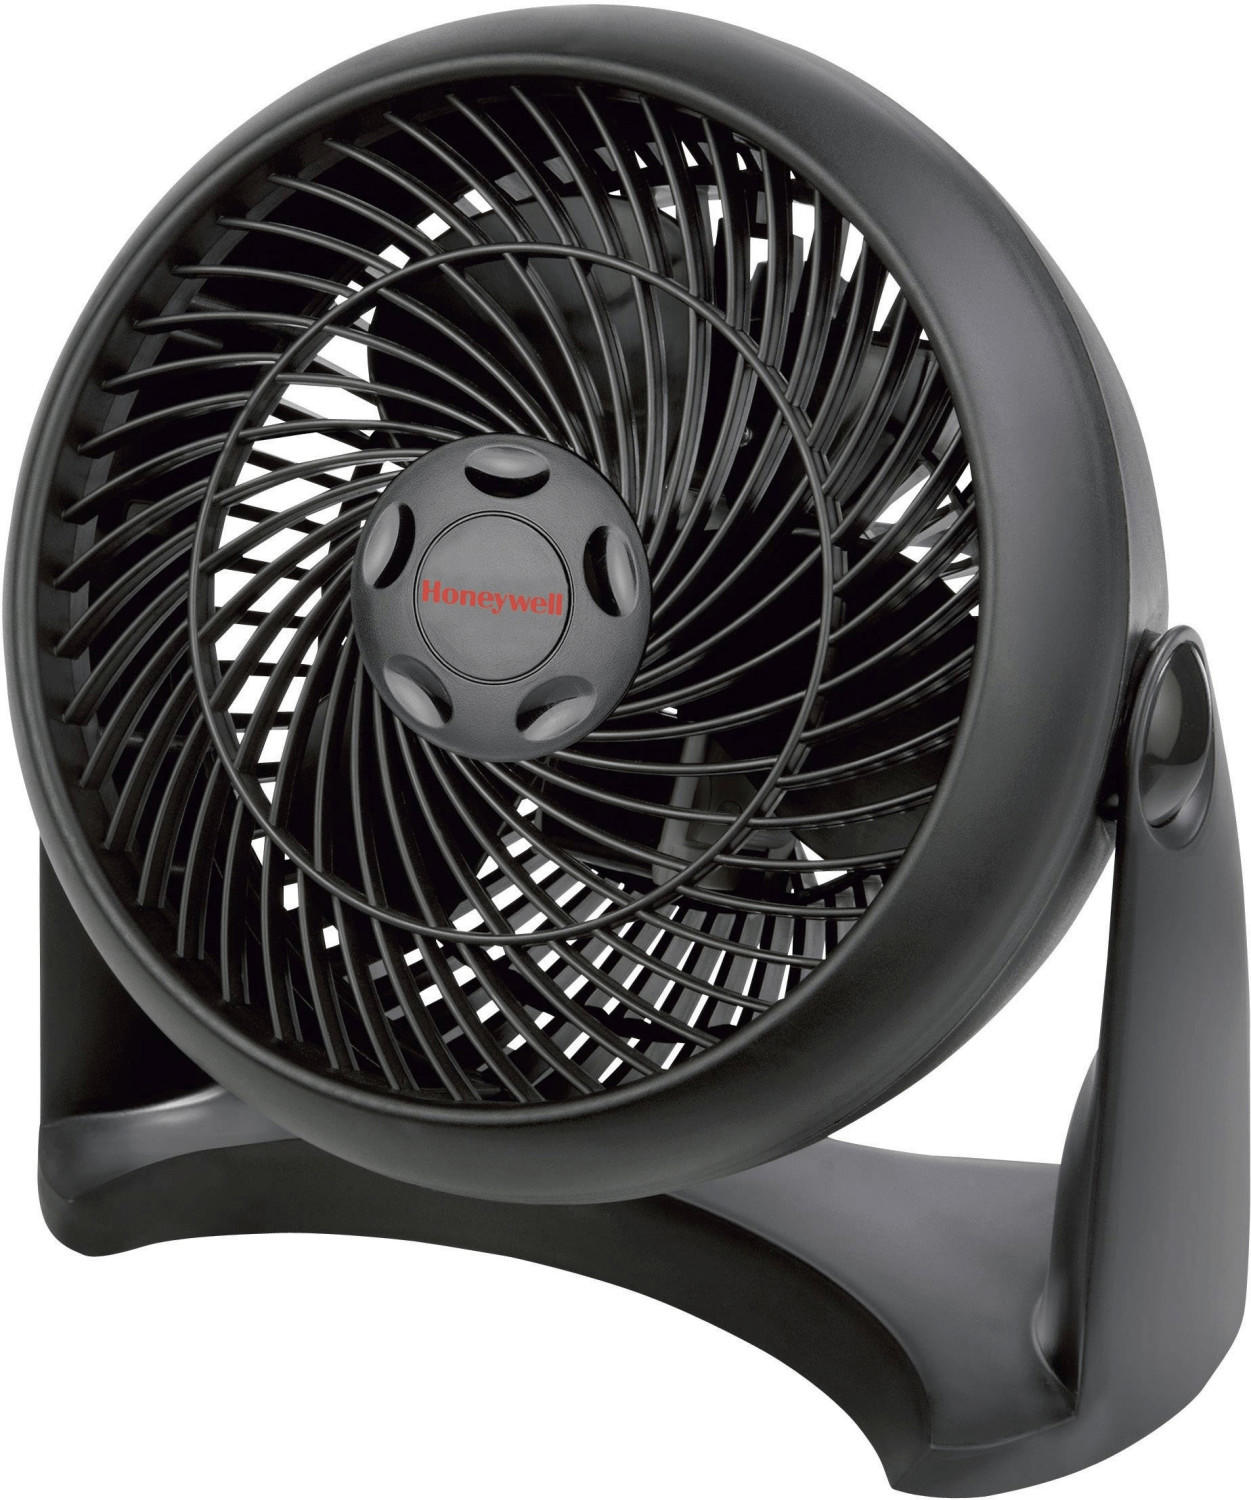 Honeywell HT-900 Turbo Fan